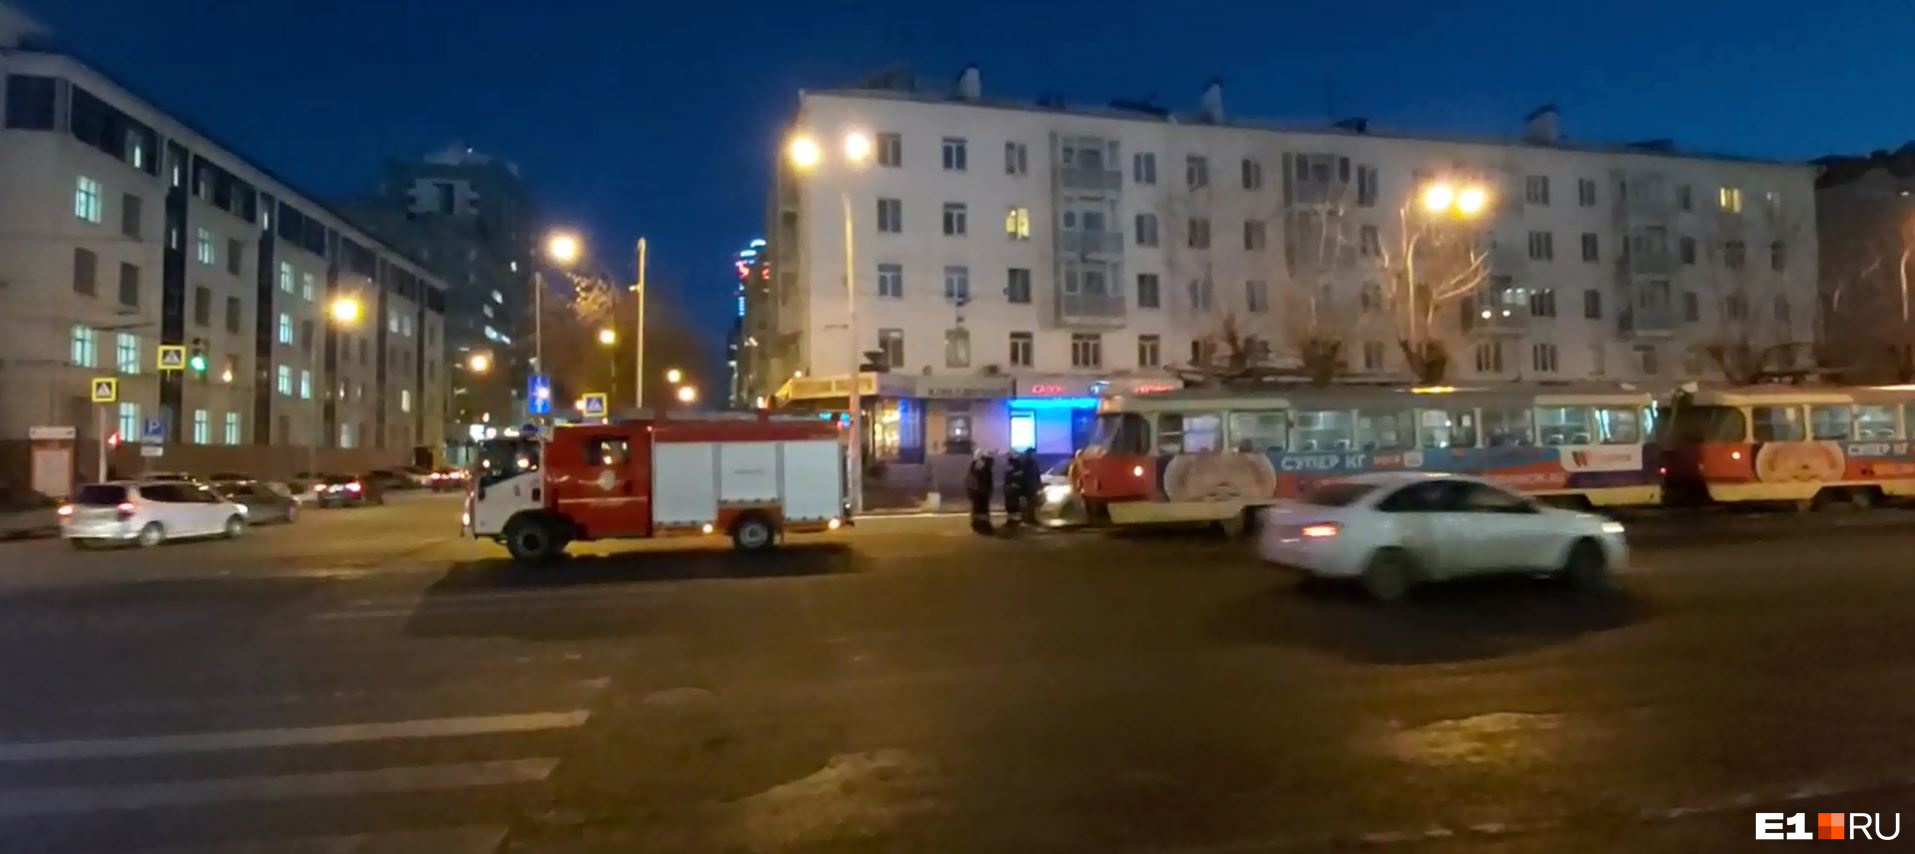 В центре Екатеринбурга пожарные и полиция перекрыли дорогу трамваям